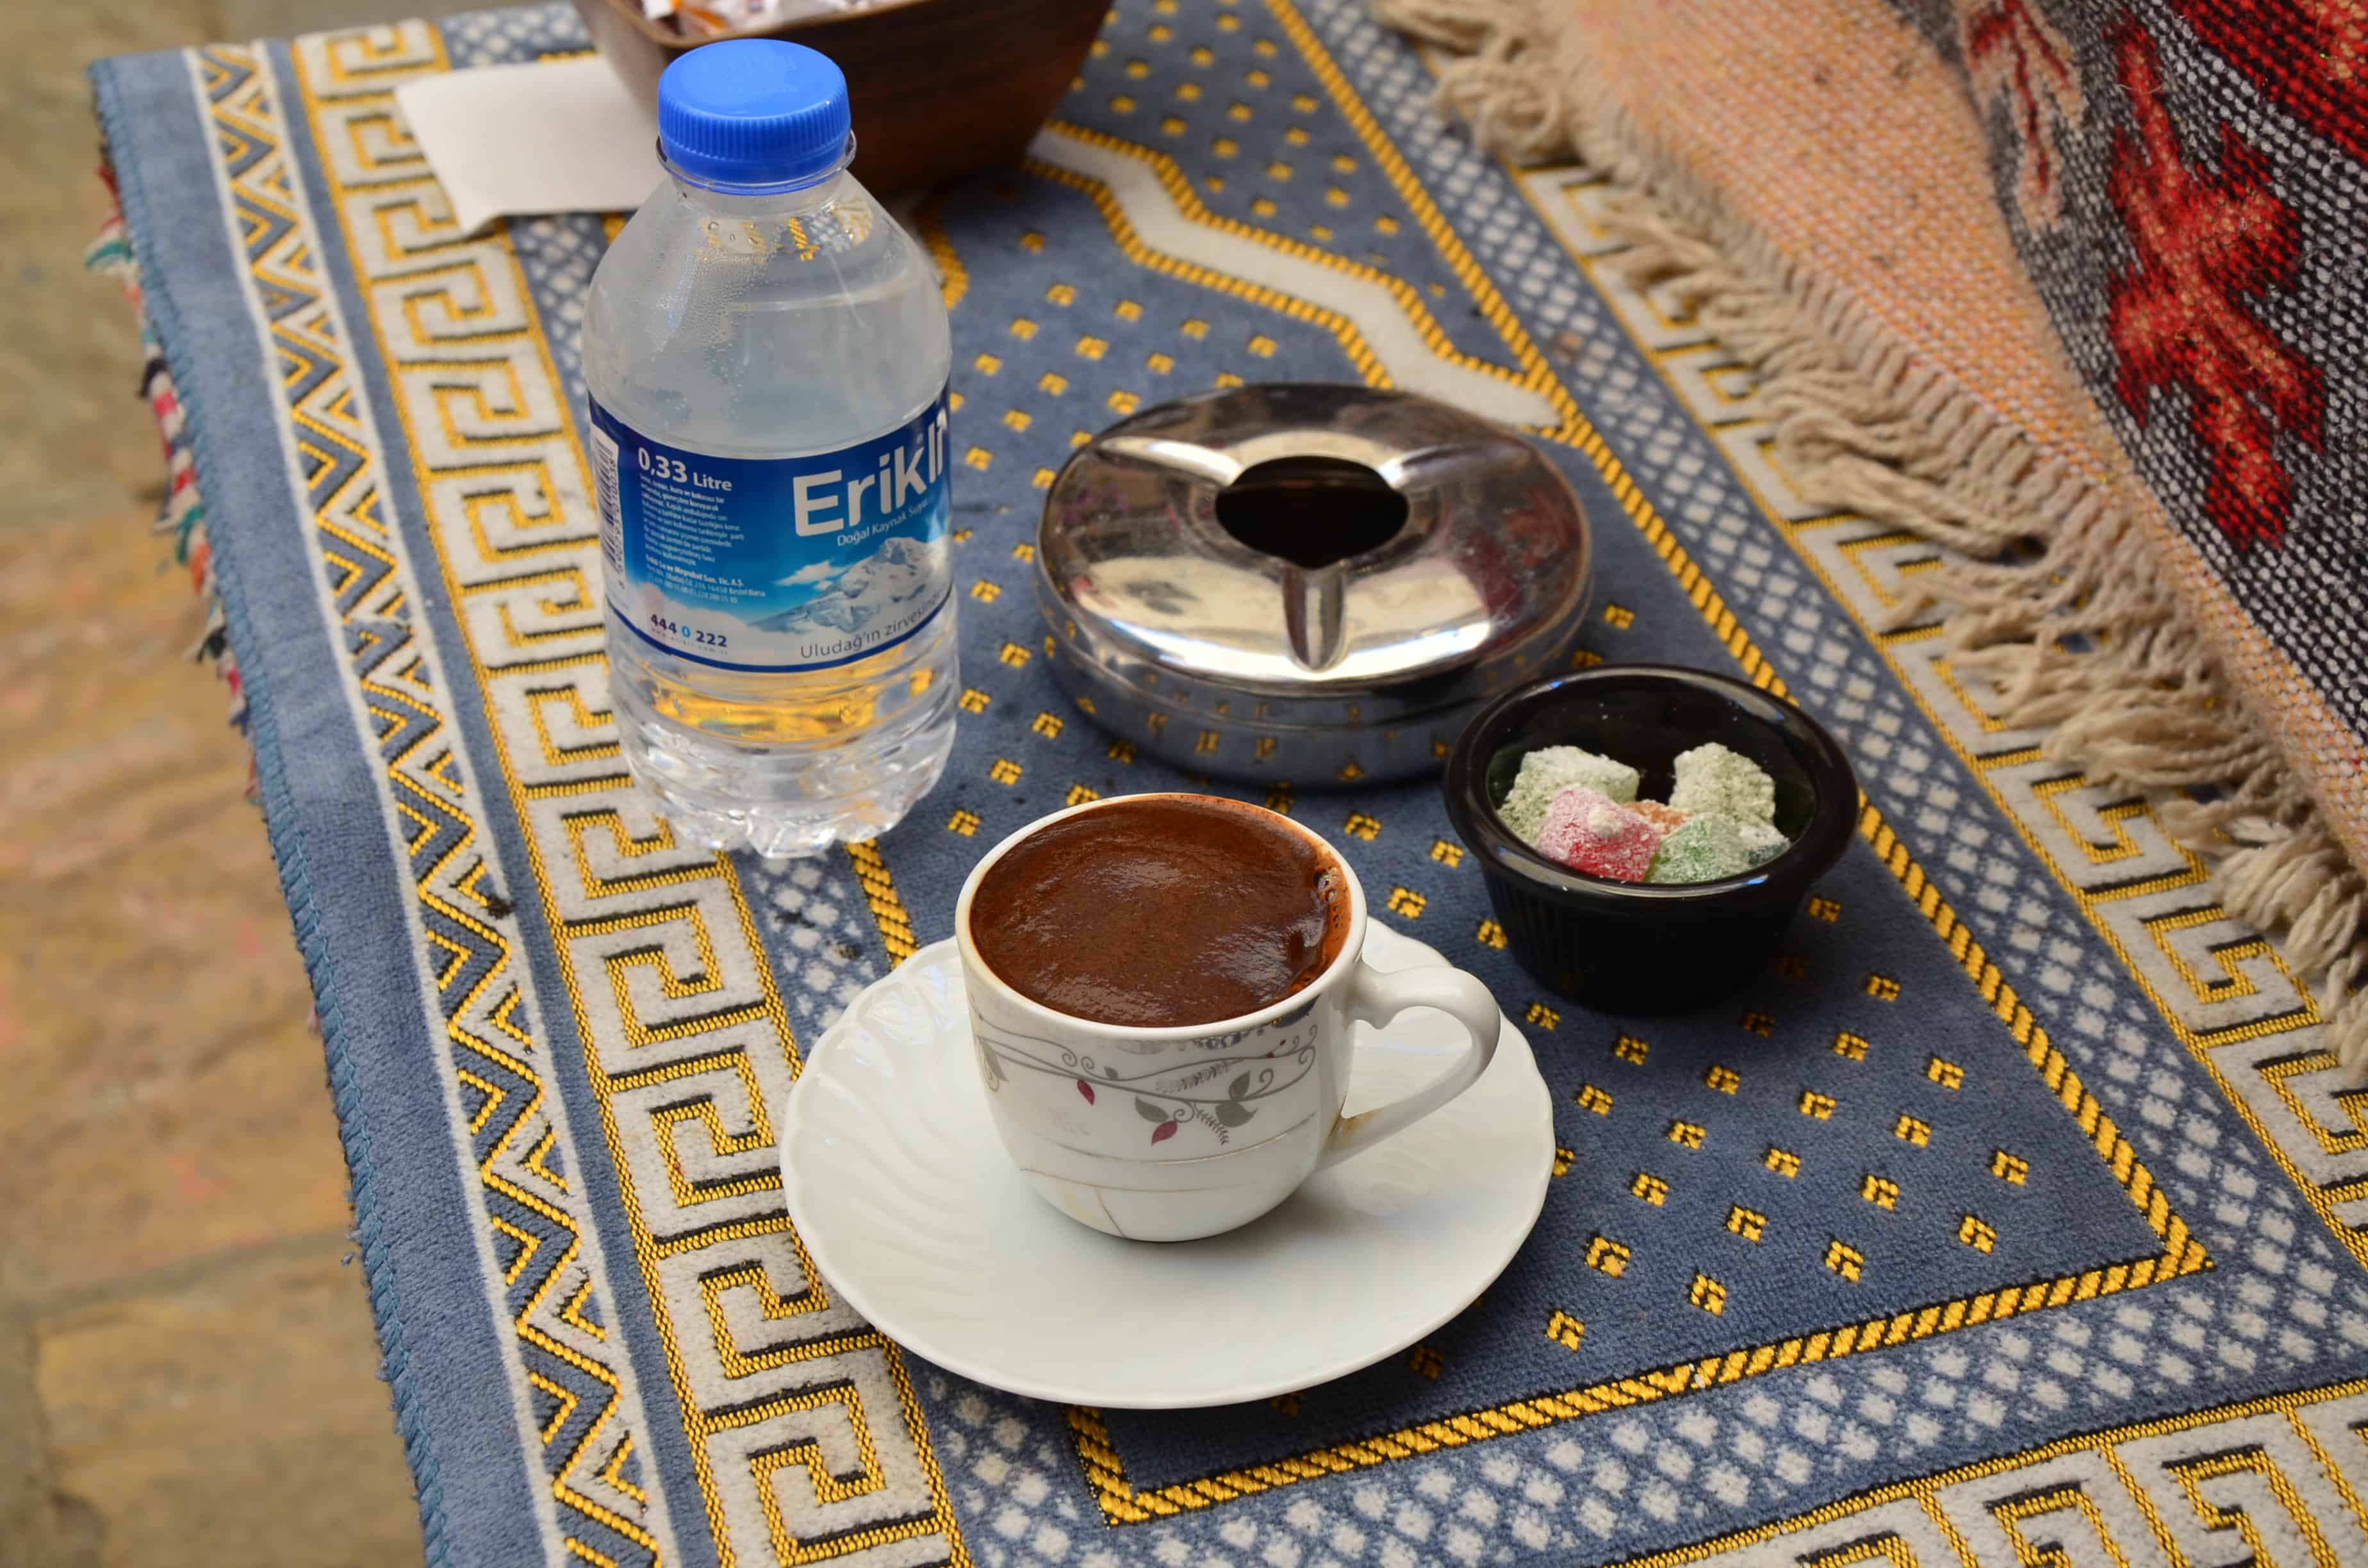 Fincanda pişen türk kahvesi in Izmir, Turkey